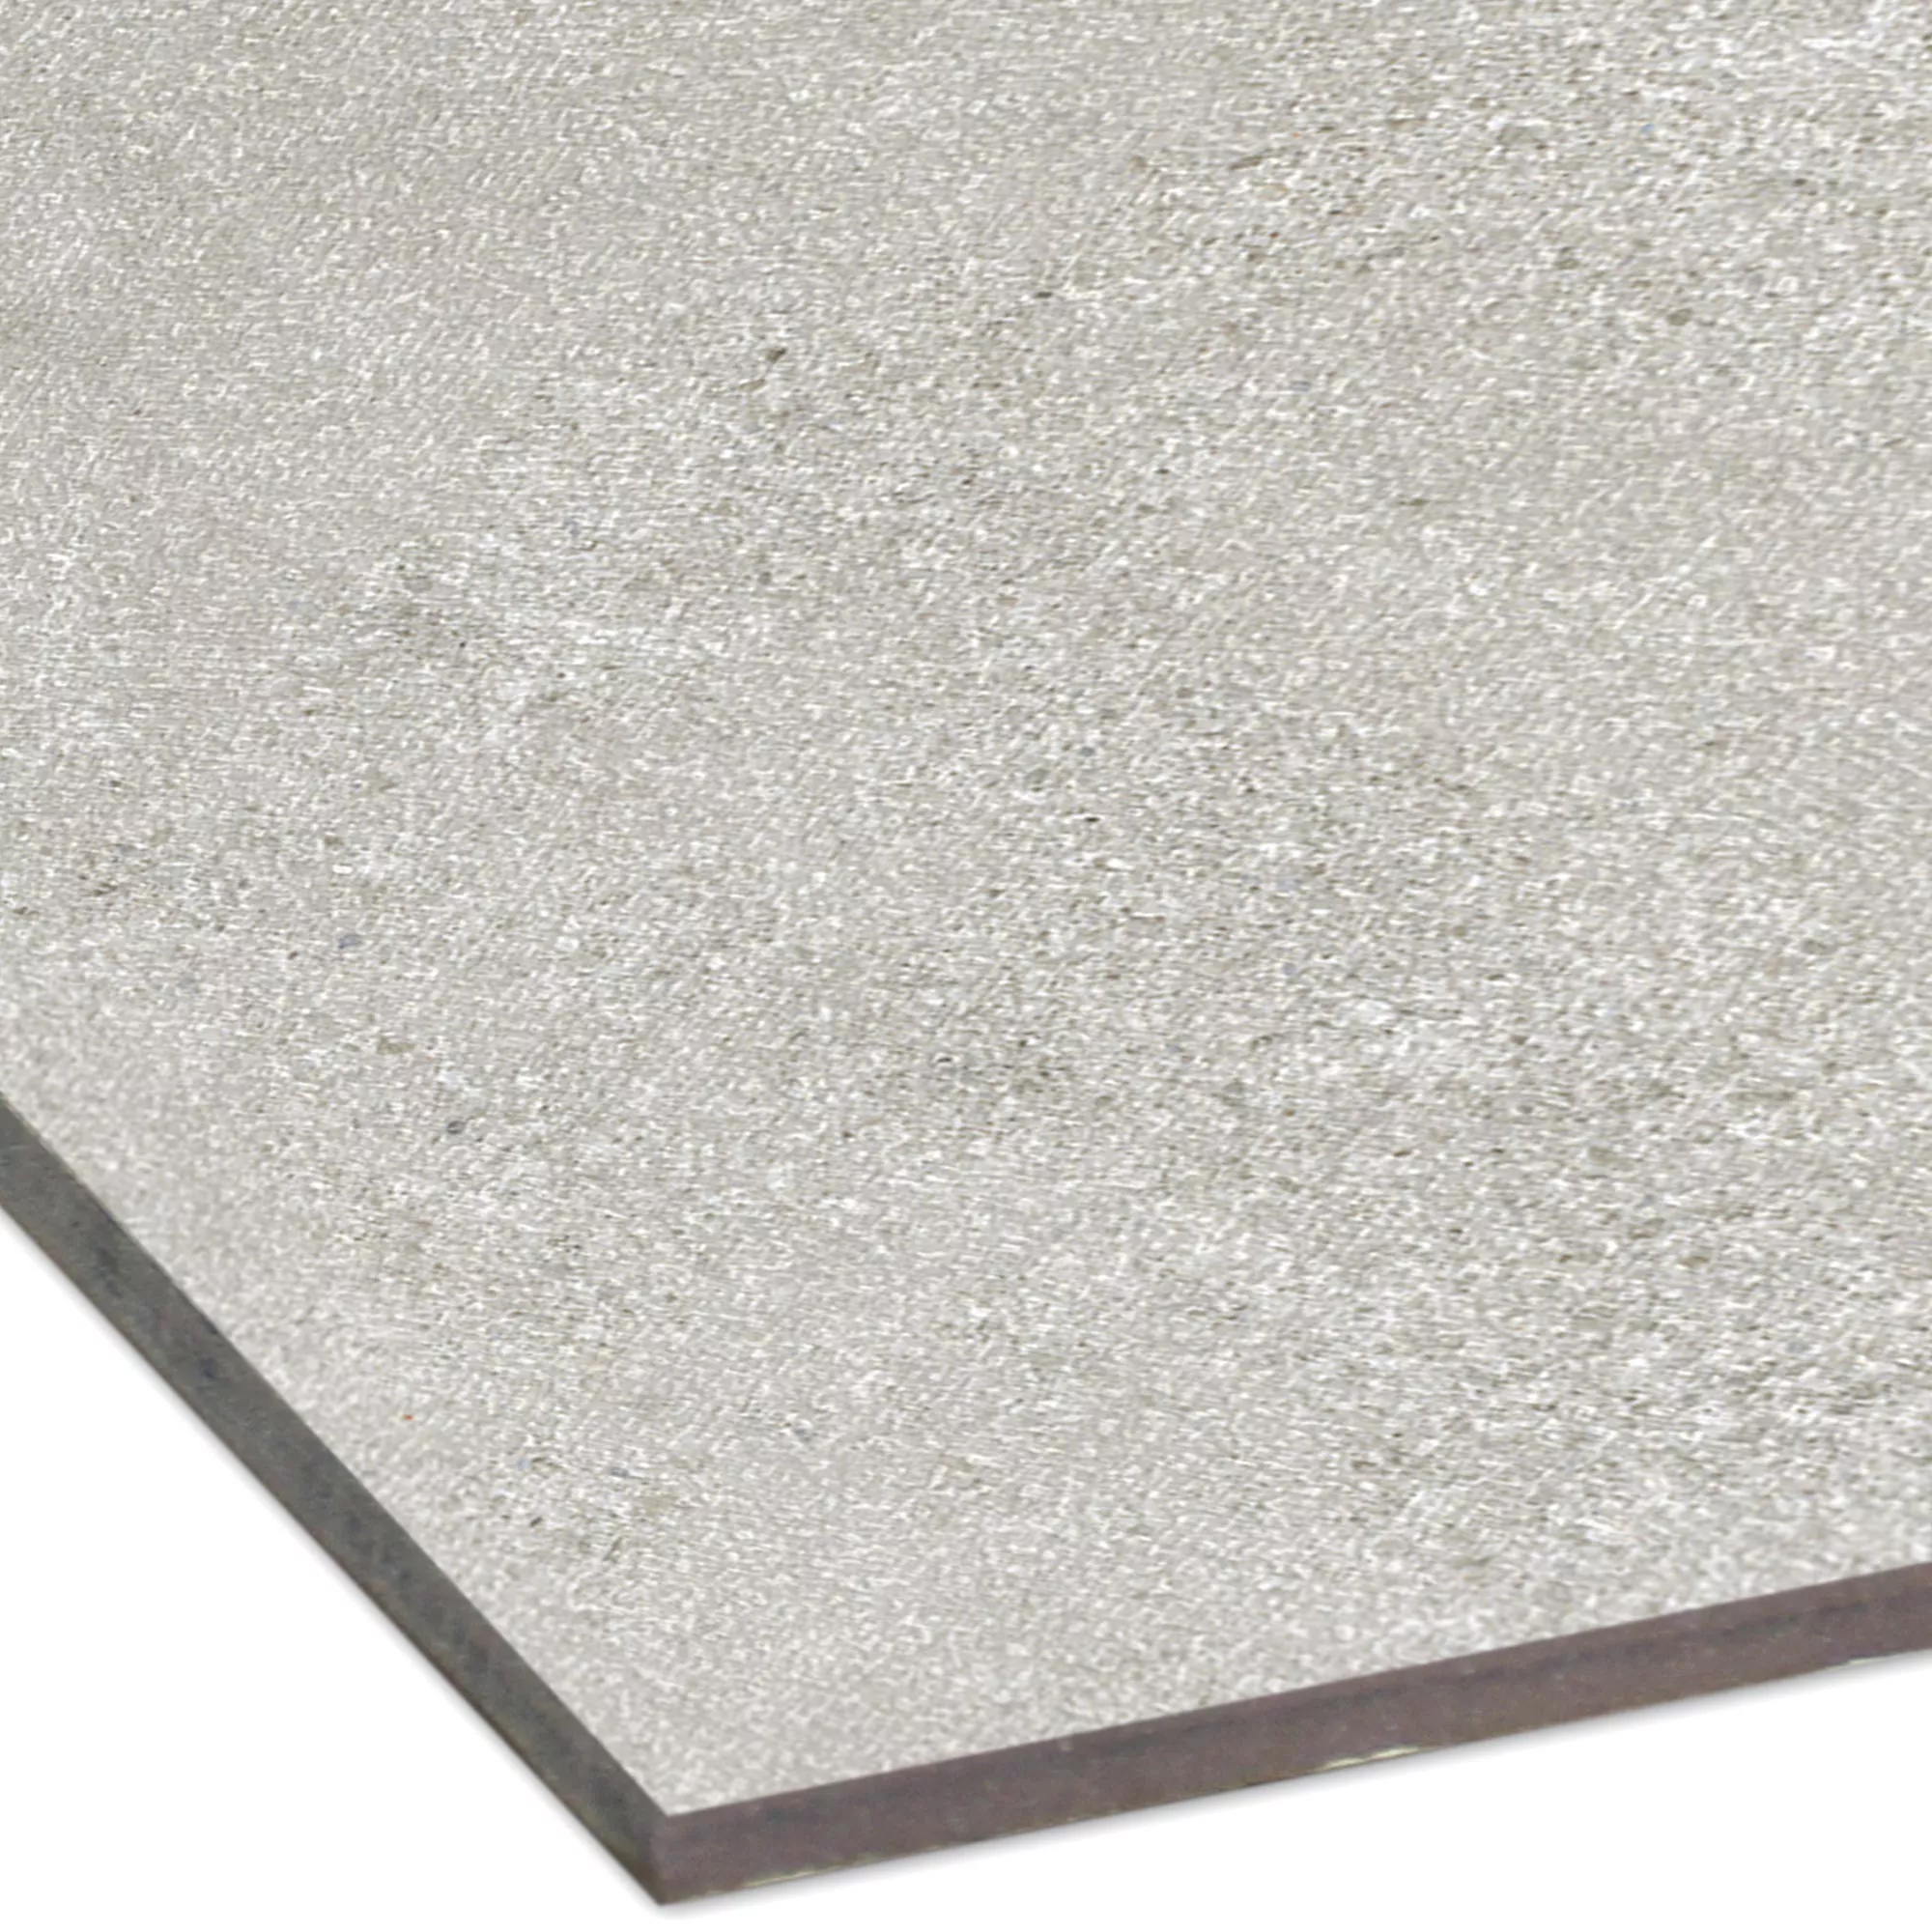 Sample Floor Tiles Galilea Unglazed R10B Grey 30x30cm